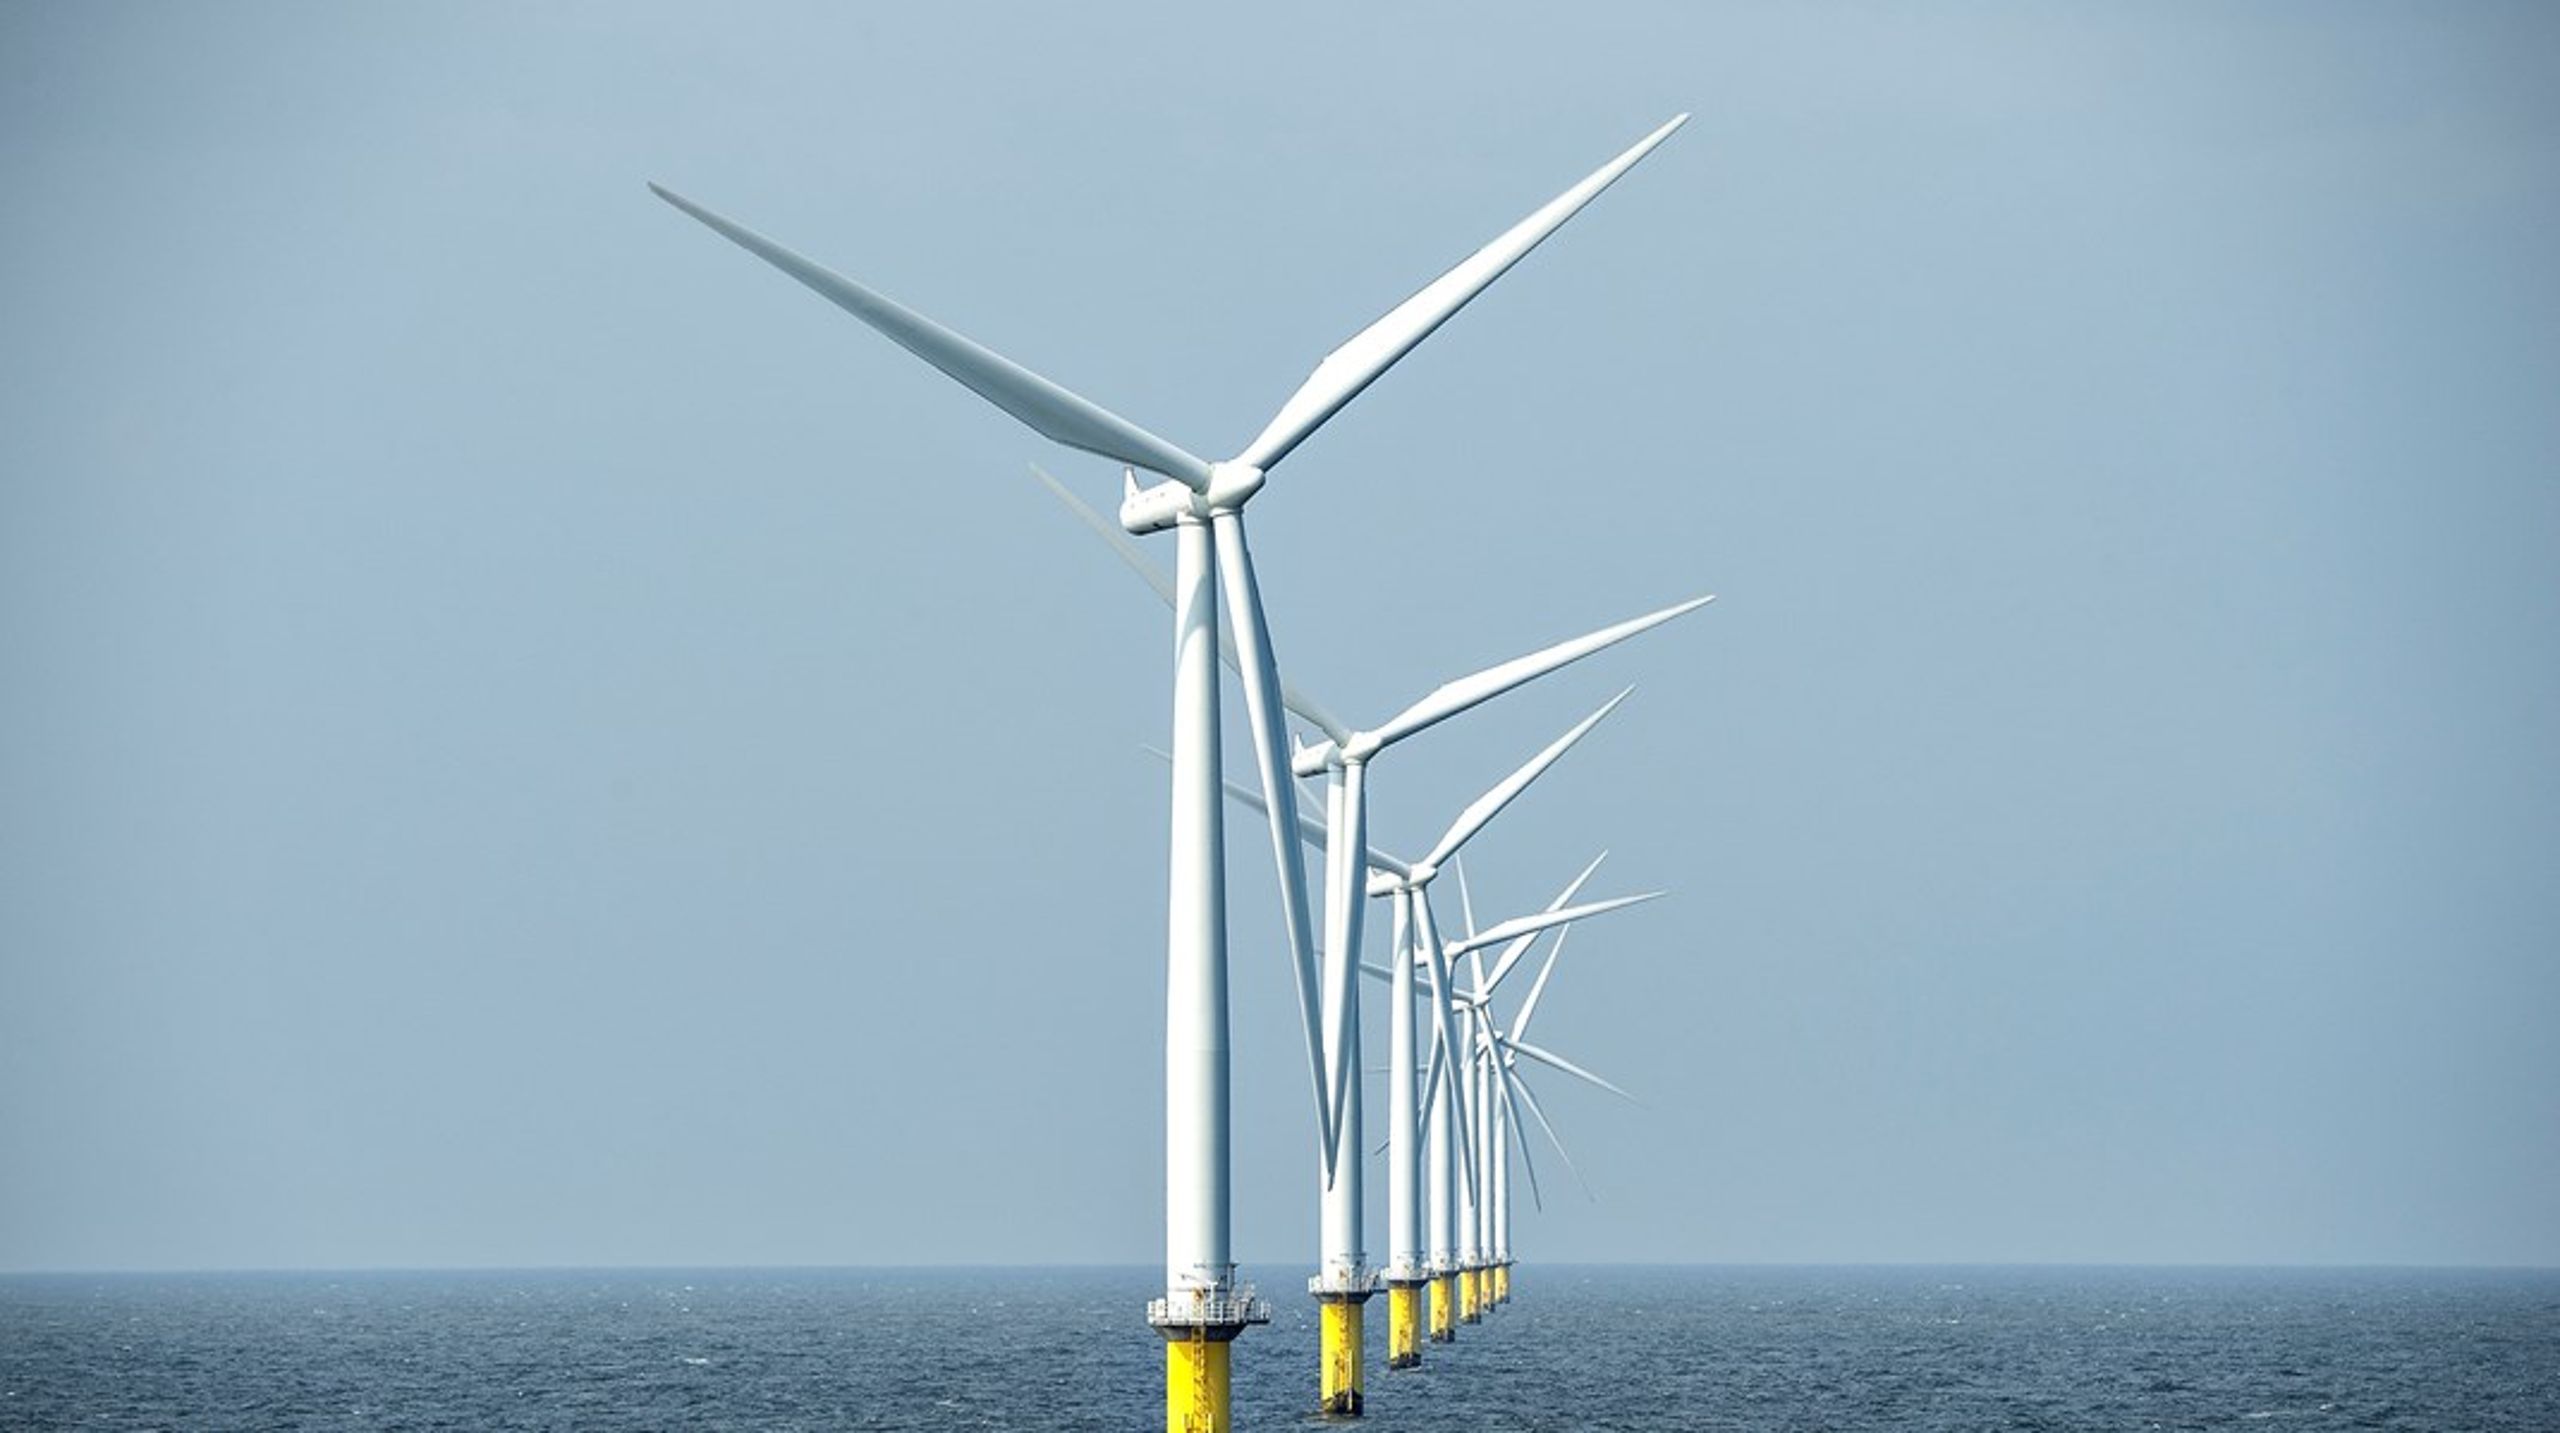 Når
blåt møder grønt i Danmark, skaber det arbejdspladser og det, som vi skal leve af i
fremtiden: Vækst skabt af vinden fra vandet, skriver Carsten Aa og Tine Kirk.&nbsp;